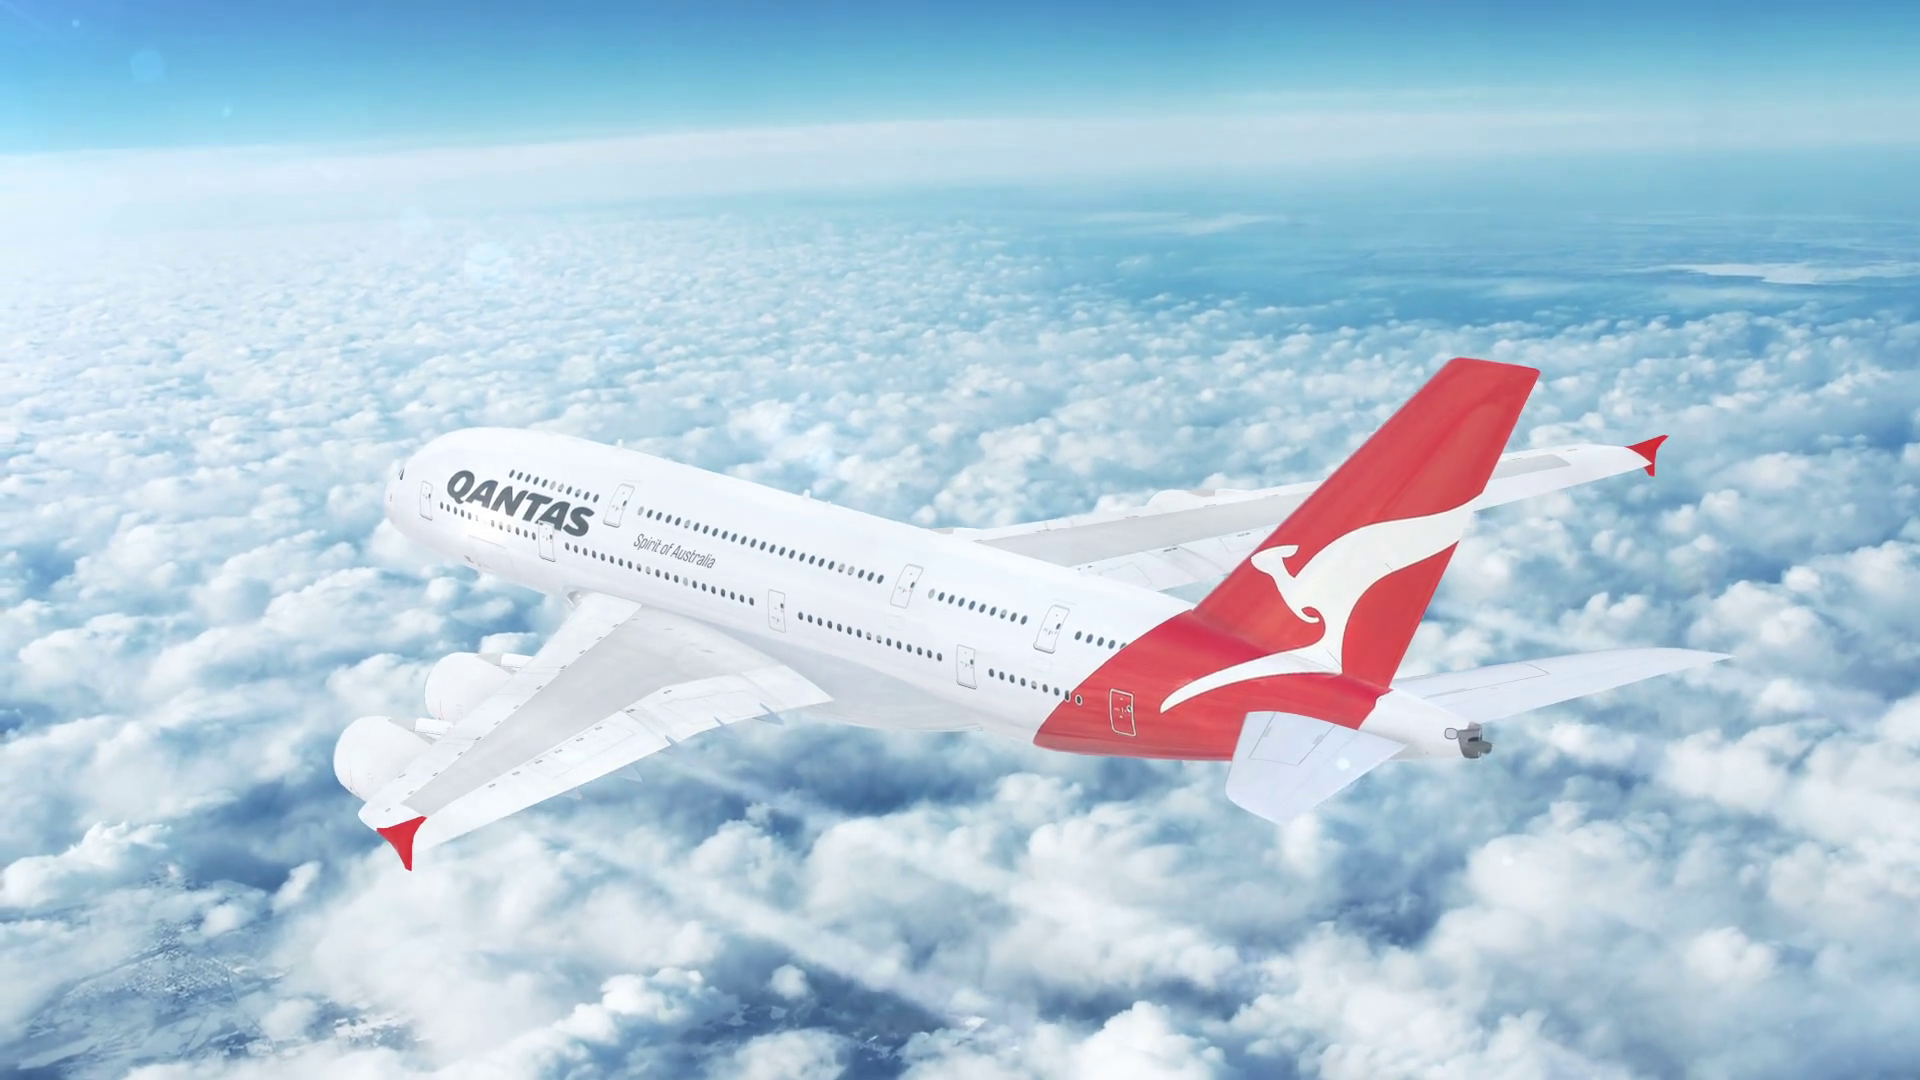 Qantas (Australia) Boeing 787 Dreamliner Commercial Passenger ...